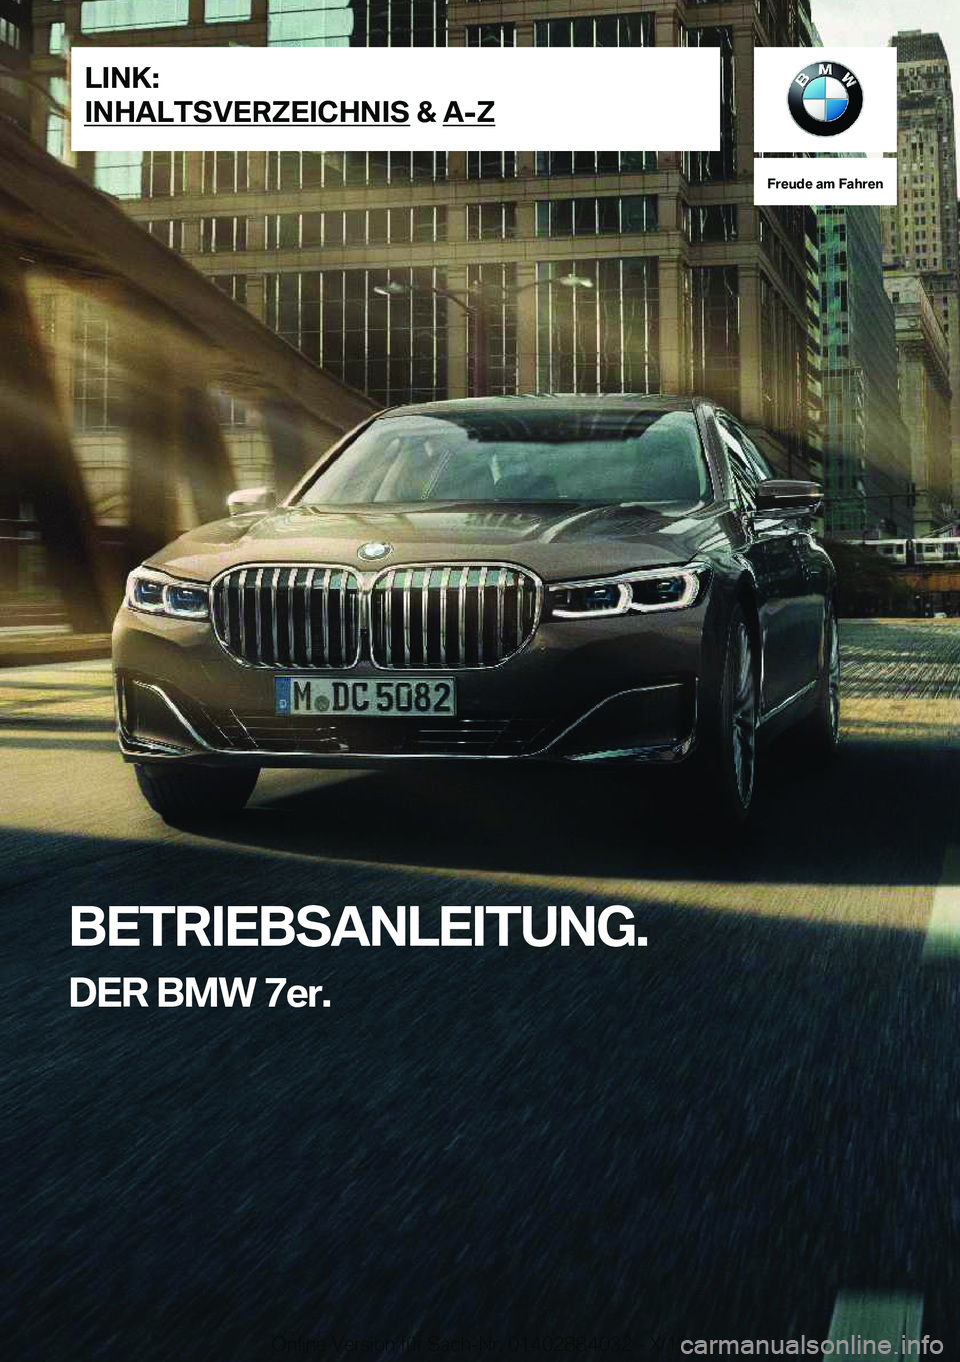 BMW 7 SERIES 2020  Betriebsanleitungen (in German) �F�r�e�u�d�e��a�m��F�a�h�r�e�n
�B�E�T�R�I�E�B�S�A�N�L�E�I�T�U�N�G�.�D�E�R��B�M�W��7�e�r�.�L�I�N�K�:
�I�N�H�A�L�T�S�V�E�R�Z�E�I�C�H�N�I�S��&��A�-�Z�O�n�l�i�n�e��V�e�r�s�i�o�n��f�